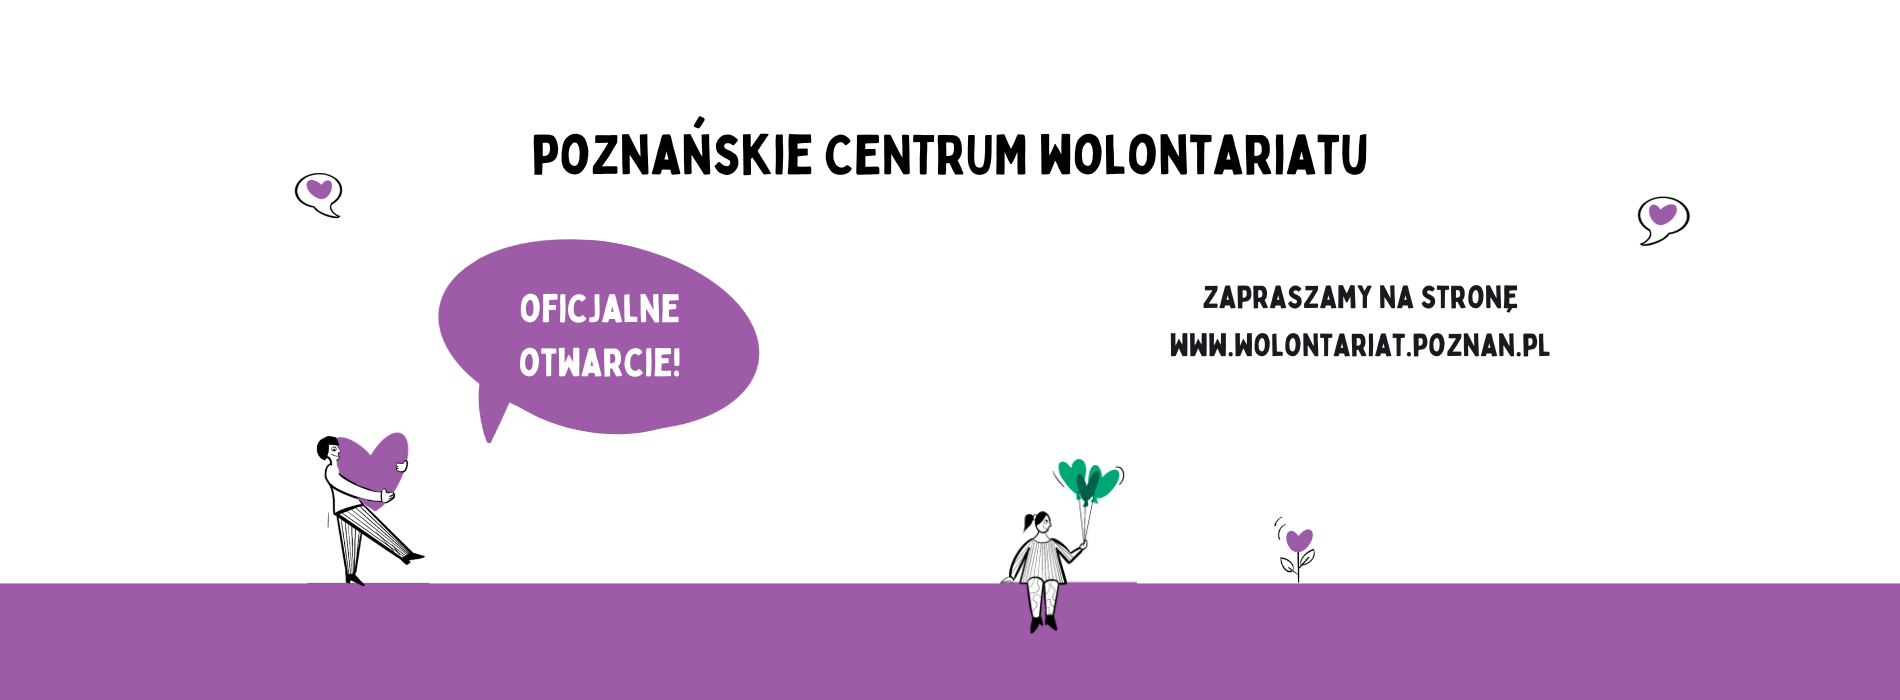 Poznańskie Centrum Wolontariatu - oficjalne otwarcie